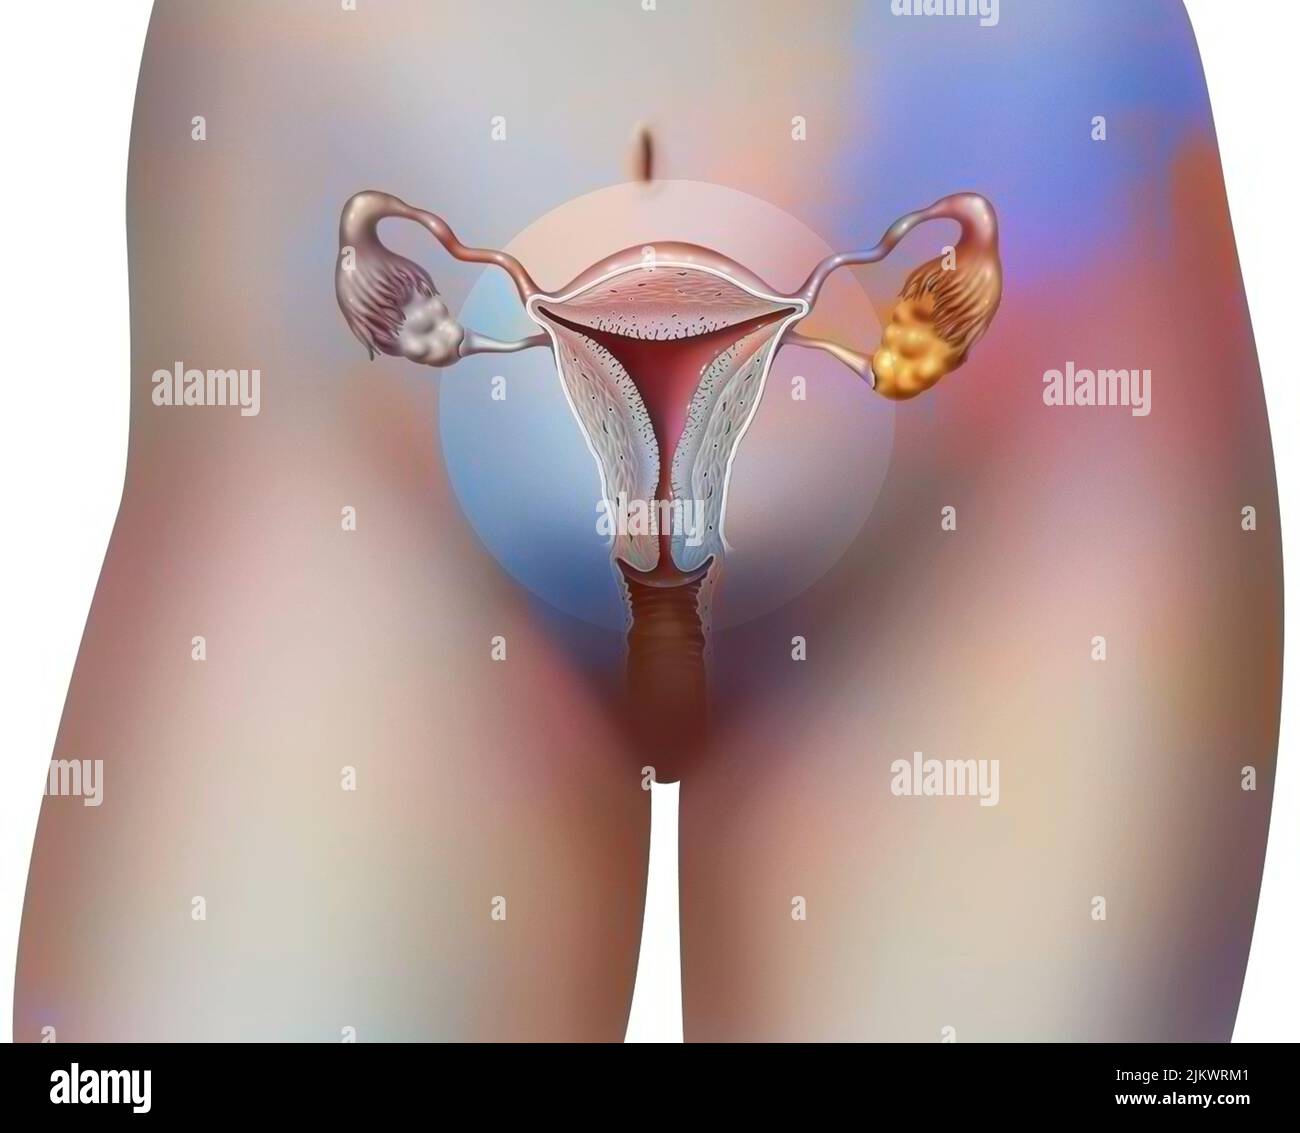 Anteriore Ansicht der weiblichen Genitalien mit Vagina, Gebärmutter, Eileiter, Eierstöcken. Stockfoto